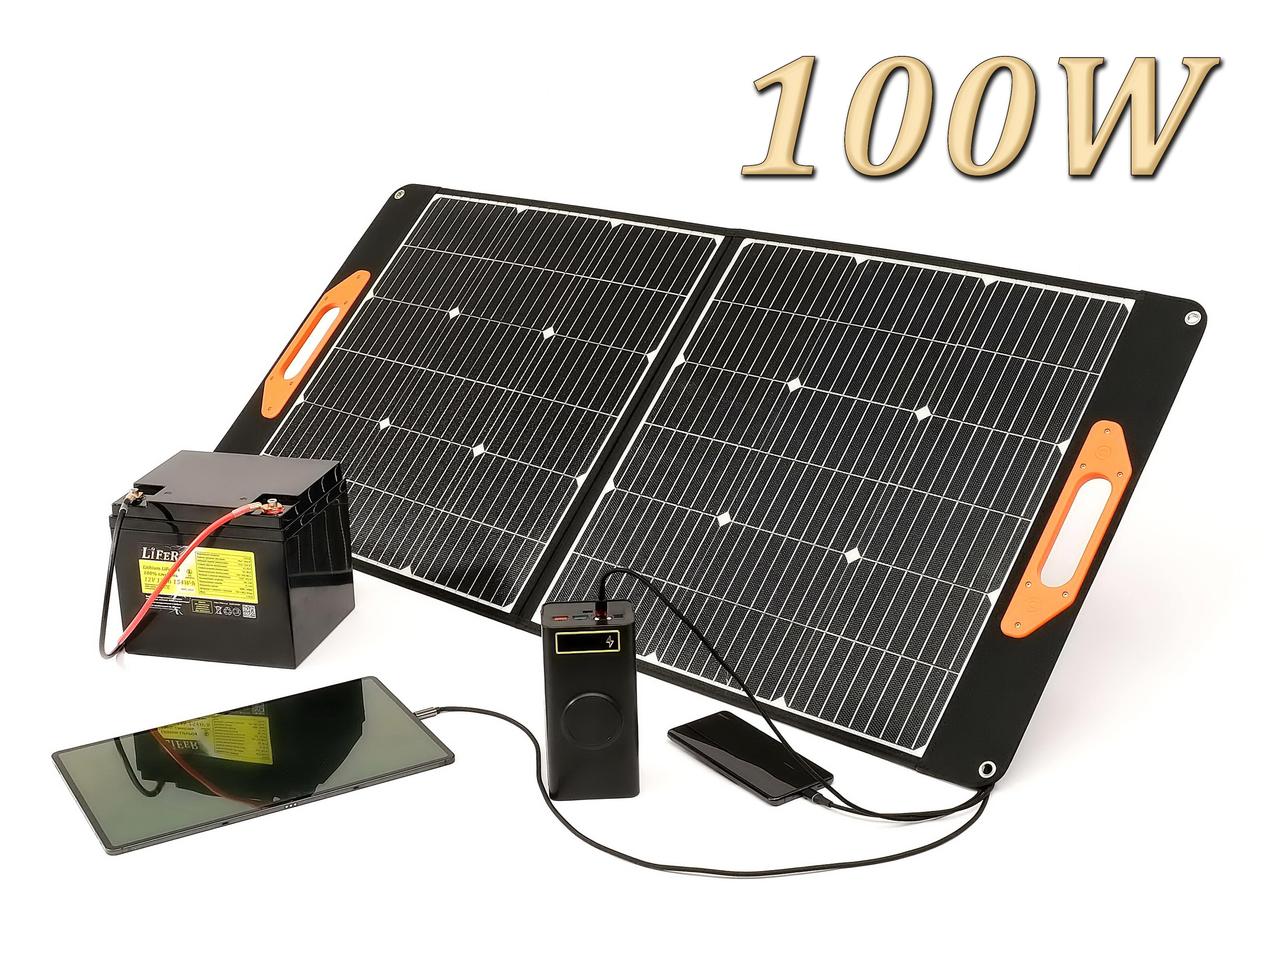 ETFE 100 Вт. Ecoflow / Bluetti / Сонячна батарея для заряджання телефону / Портативна сонячна панель  LiFeR